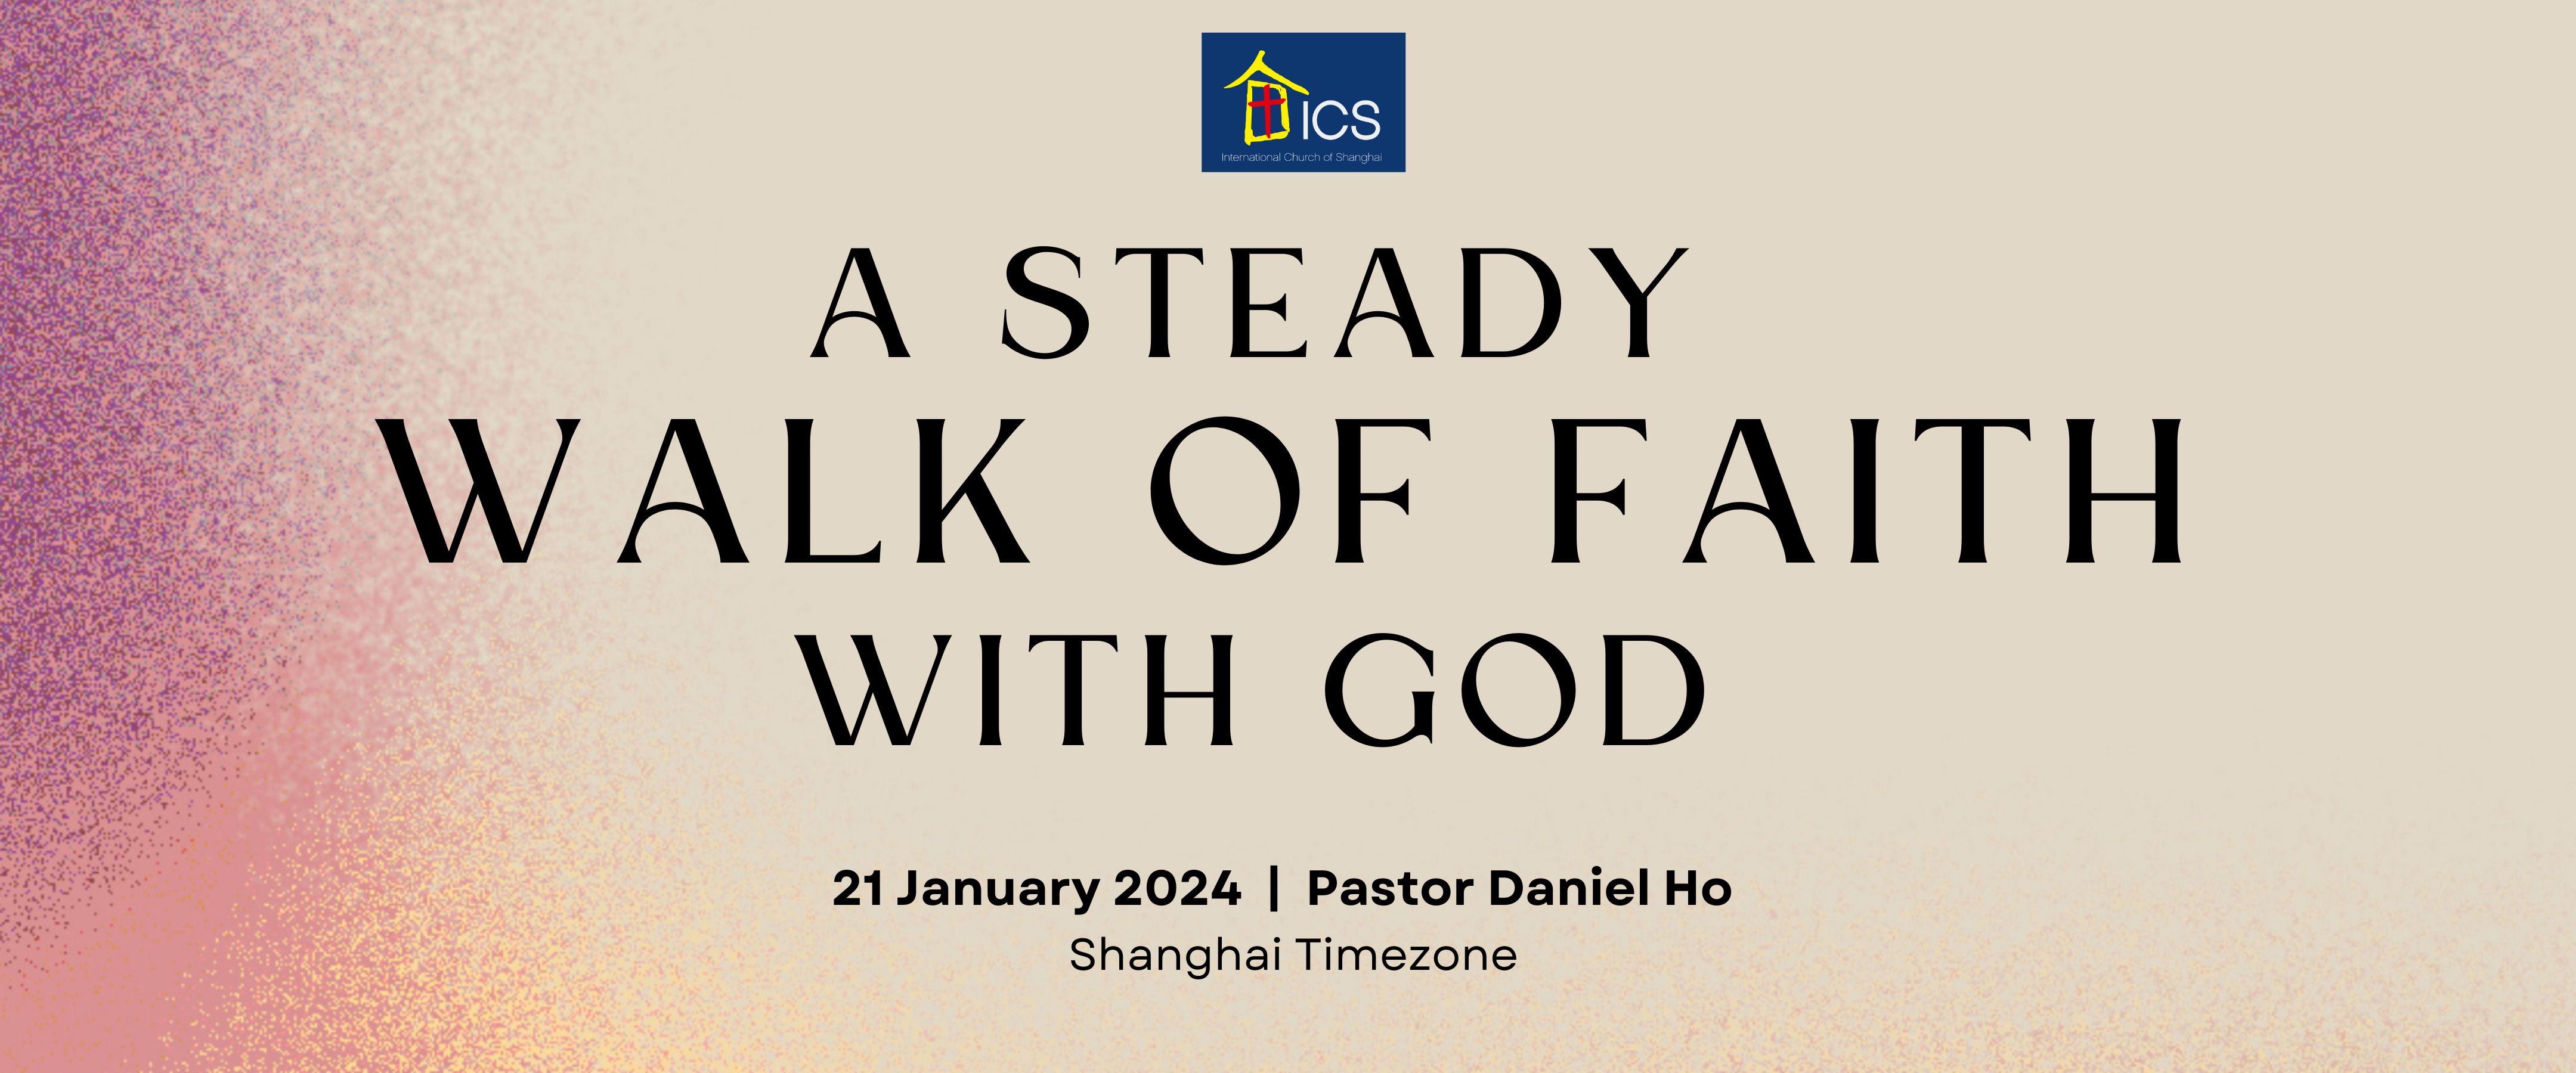 A Steady Walk of Faith with God